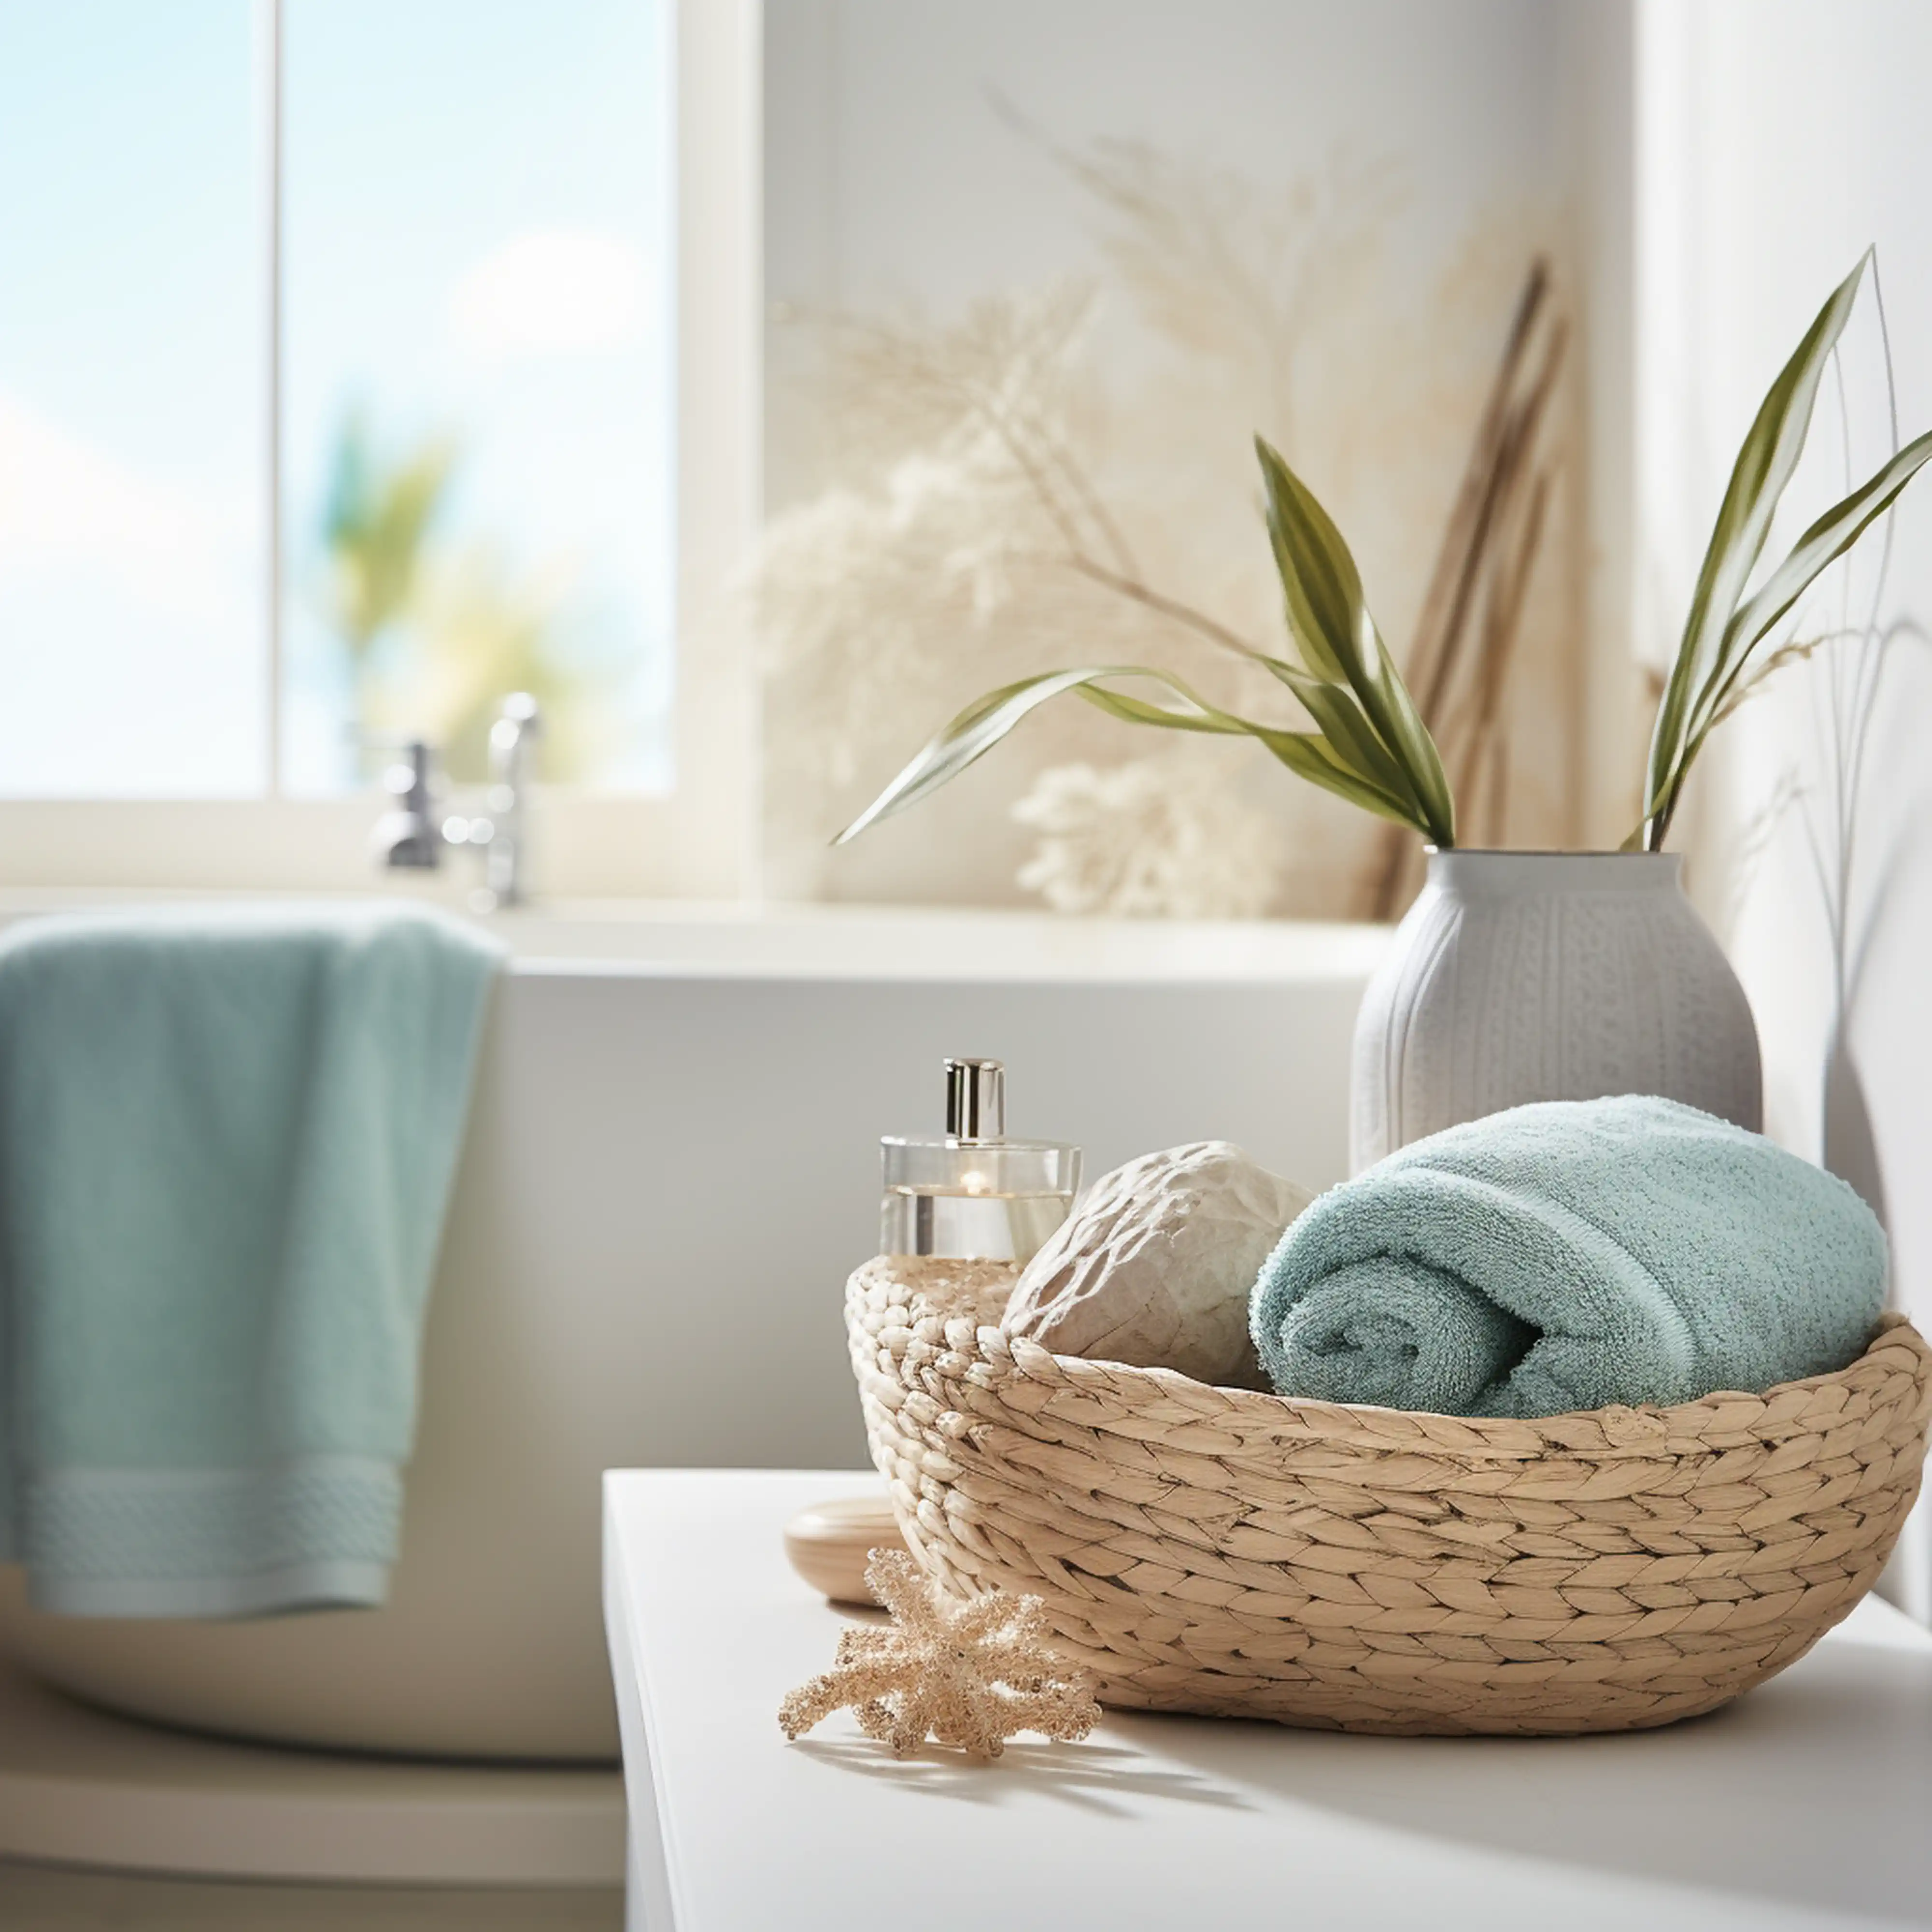 Salle de bain élégante avec accessoires côtiers incluant un panier tressé et une serviette bleu pâle, intérieur signé Sarah Brown Design